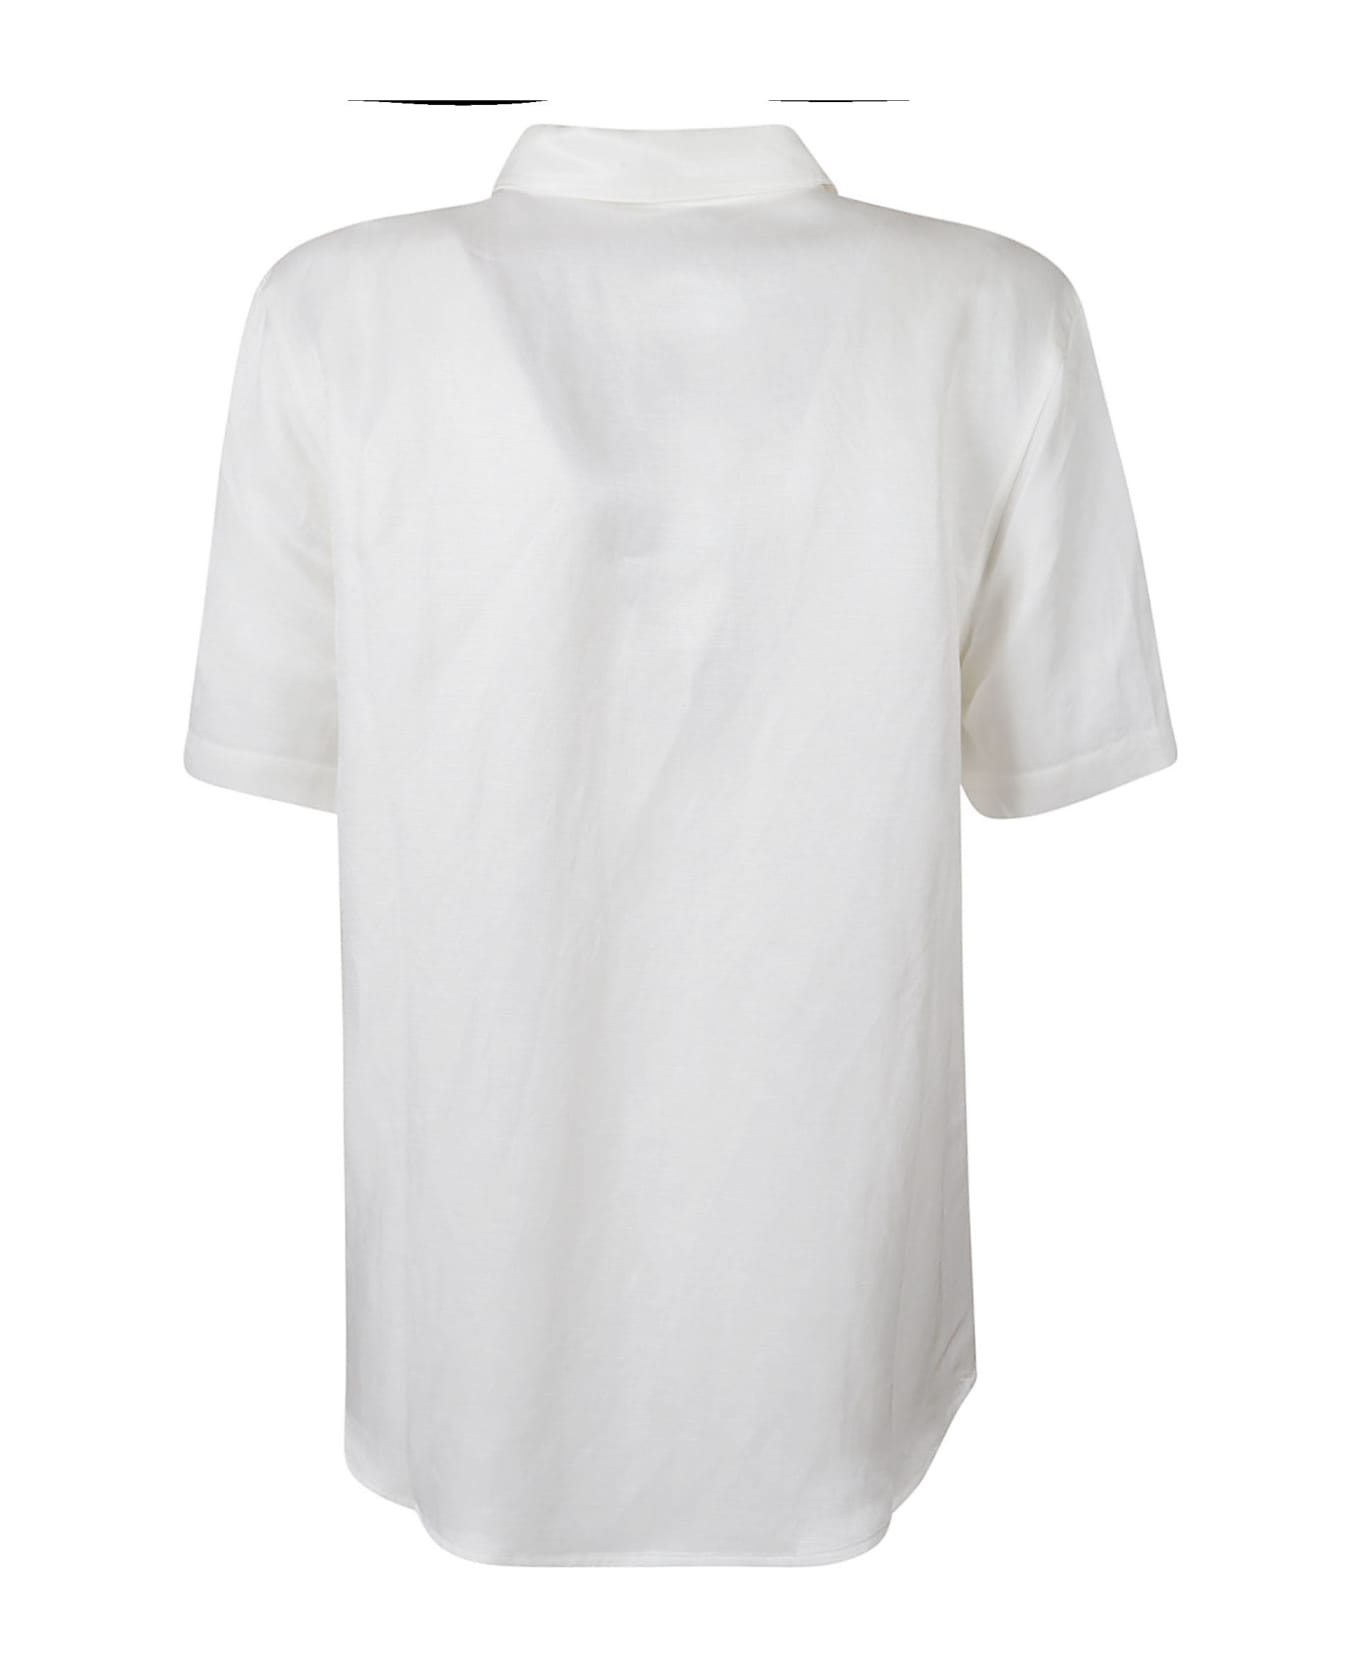 Anine Bing Short-sleeved Plain Shirt - White